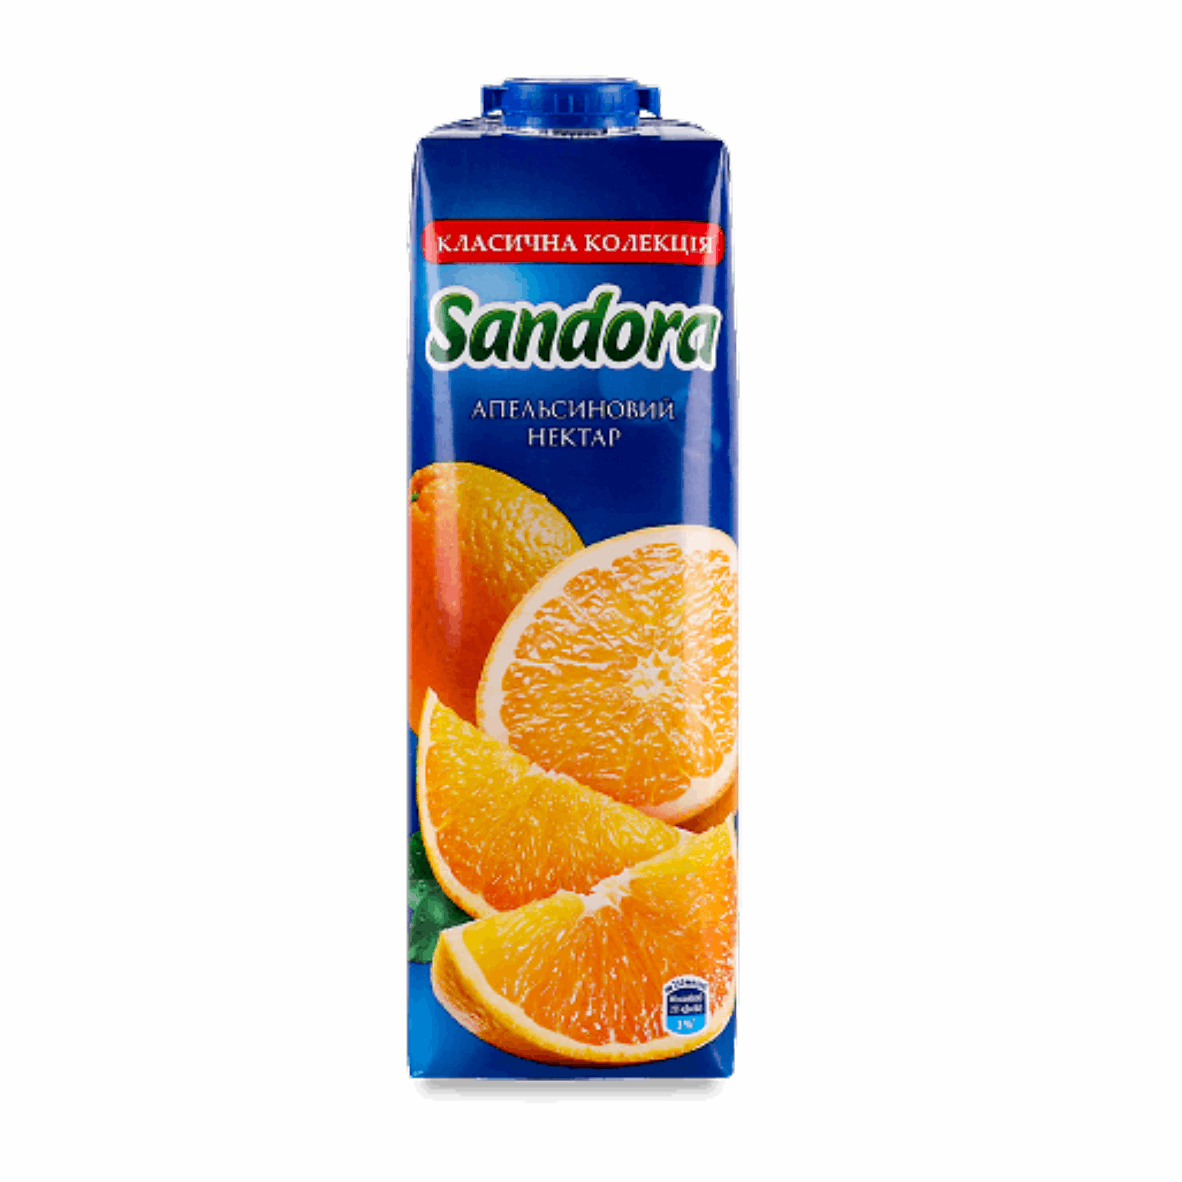 Нектар Sandora Апельсин